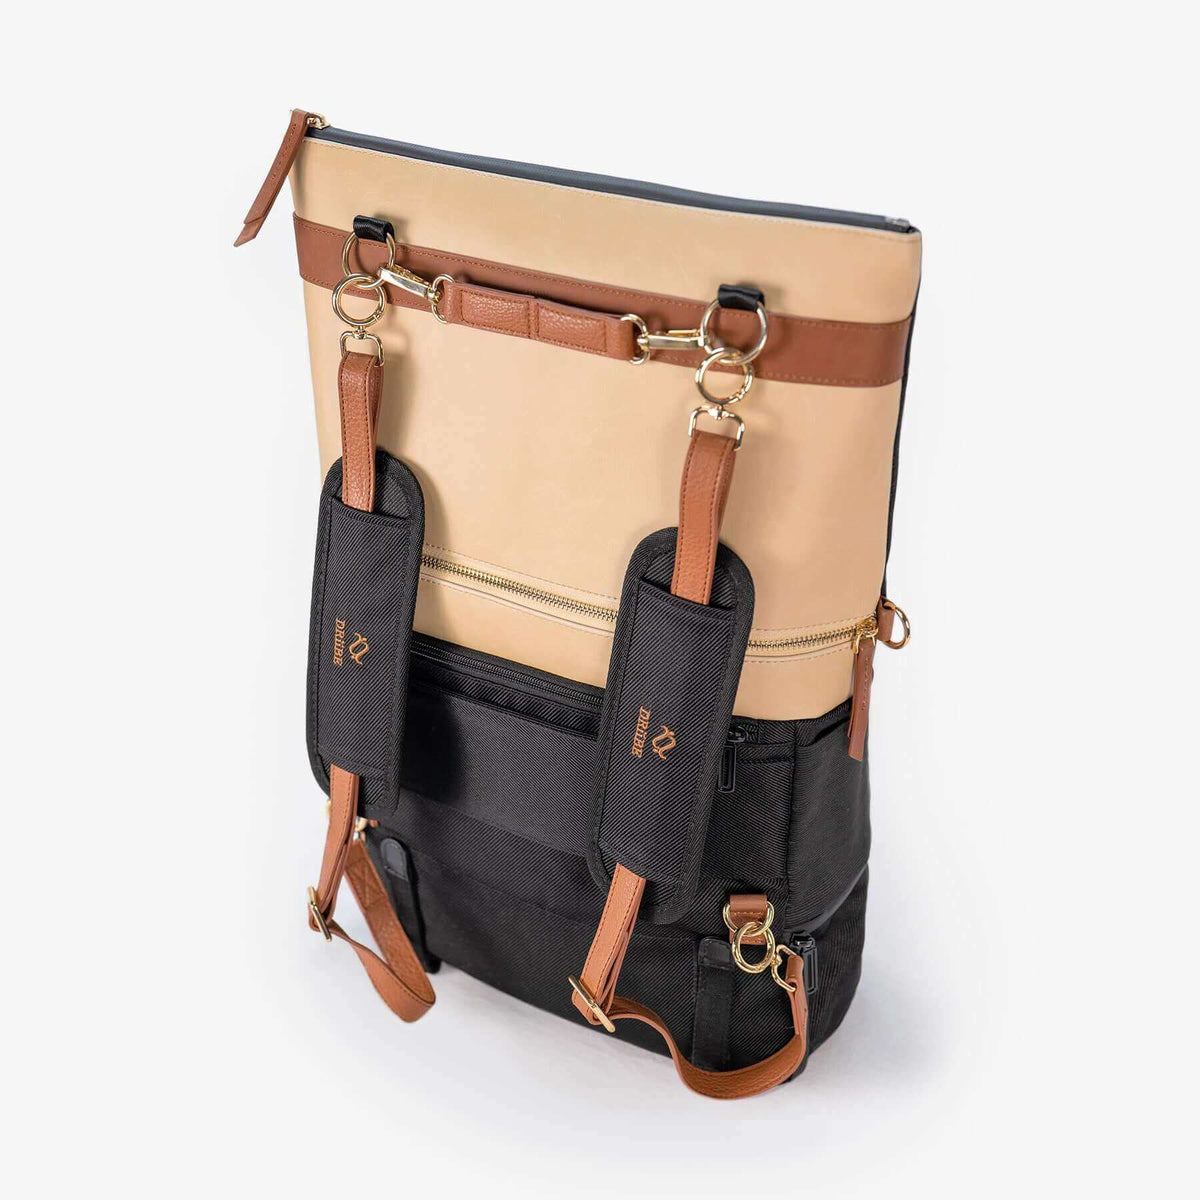 Blue and Brown Lovestitch Boho Weekender Bag – Dakotas Boutique